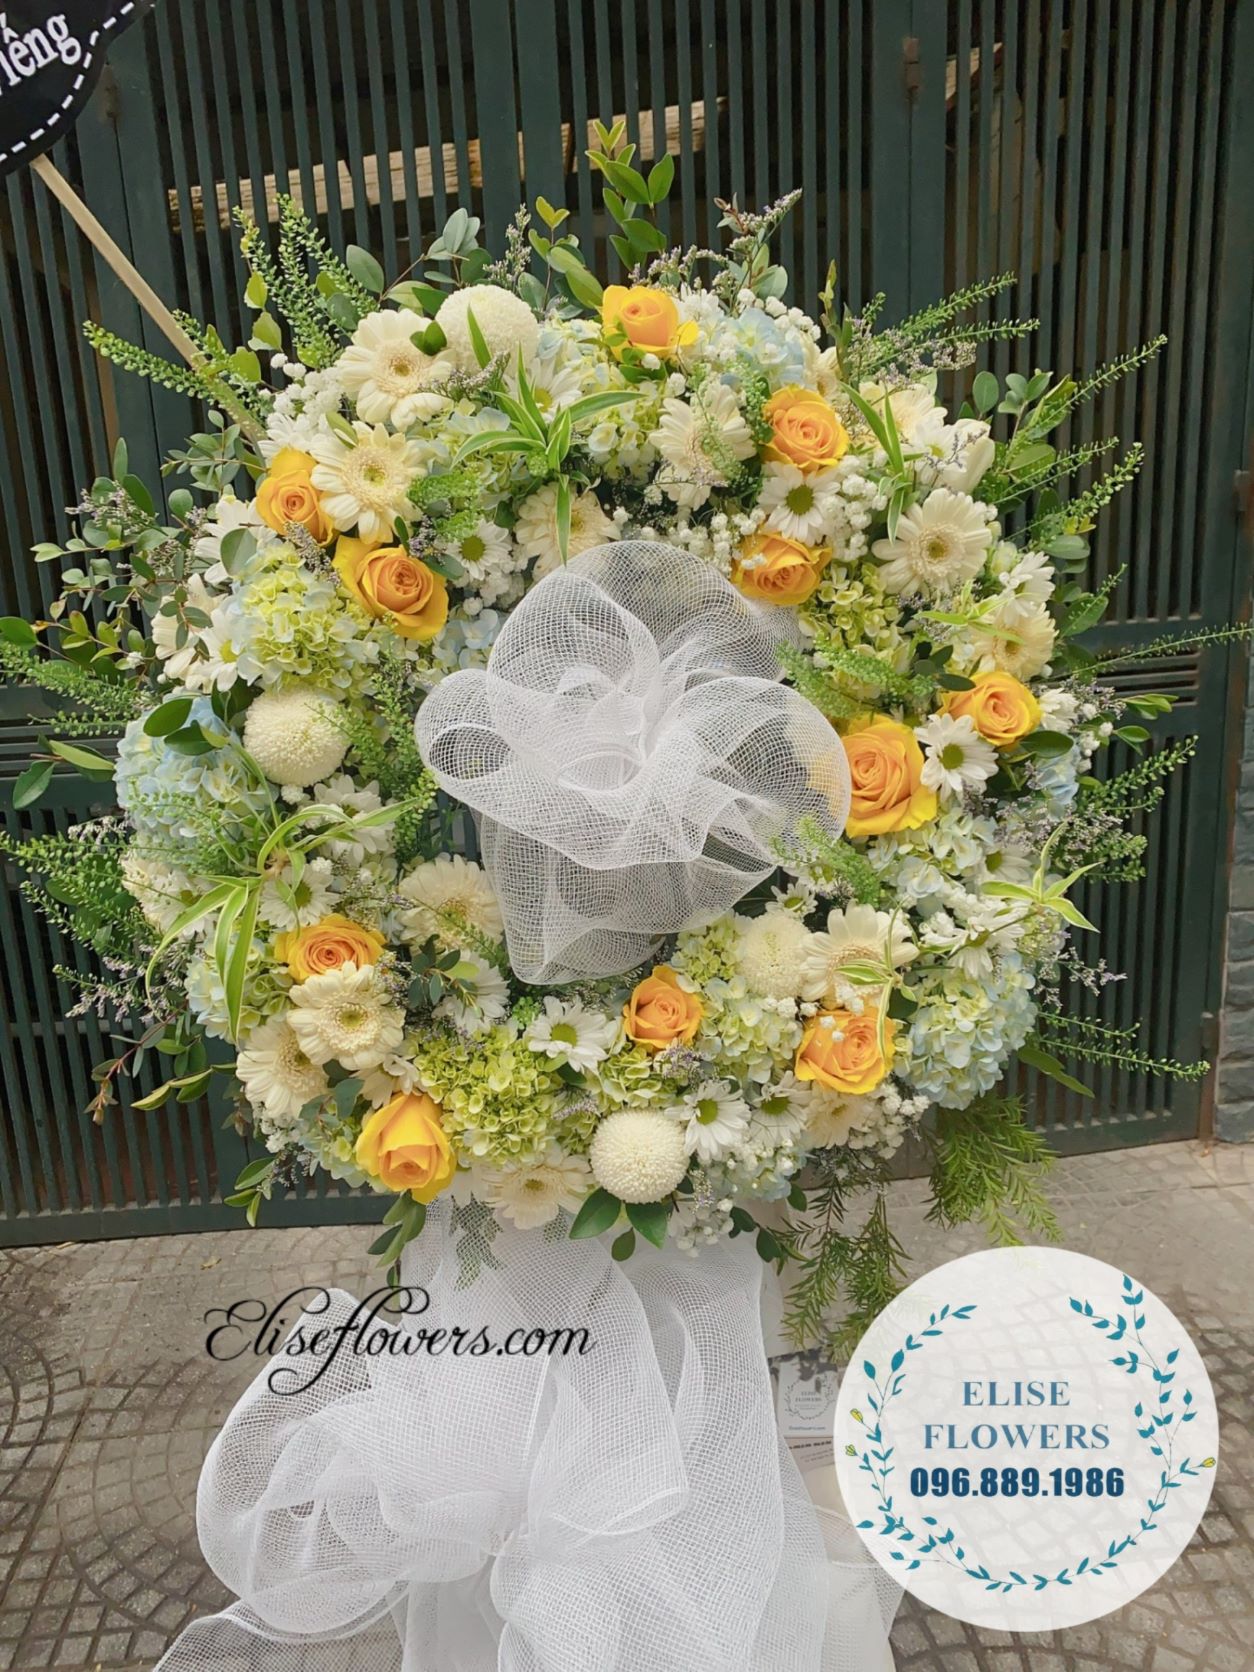 Hoa tang | Lẵng hoa chia buồn viếng đám tang đẹp và ý nghĩa nhất | Lẵng hoa chia buồn đẹp tại Cầu Giấy | Điện hoa chia buồn ở Hà Nội